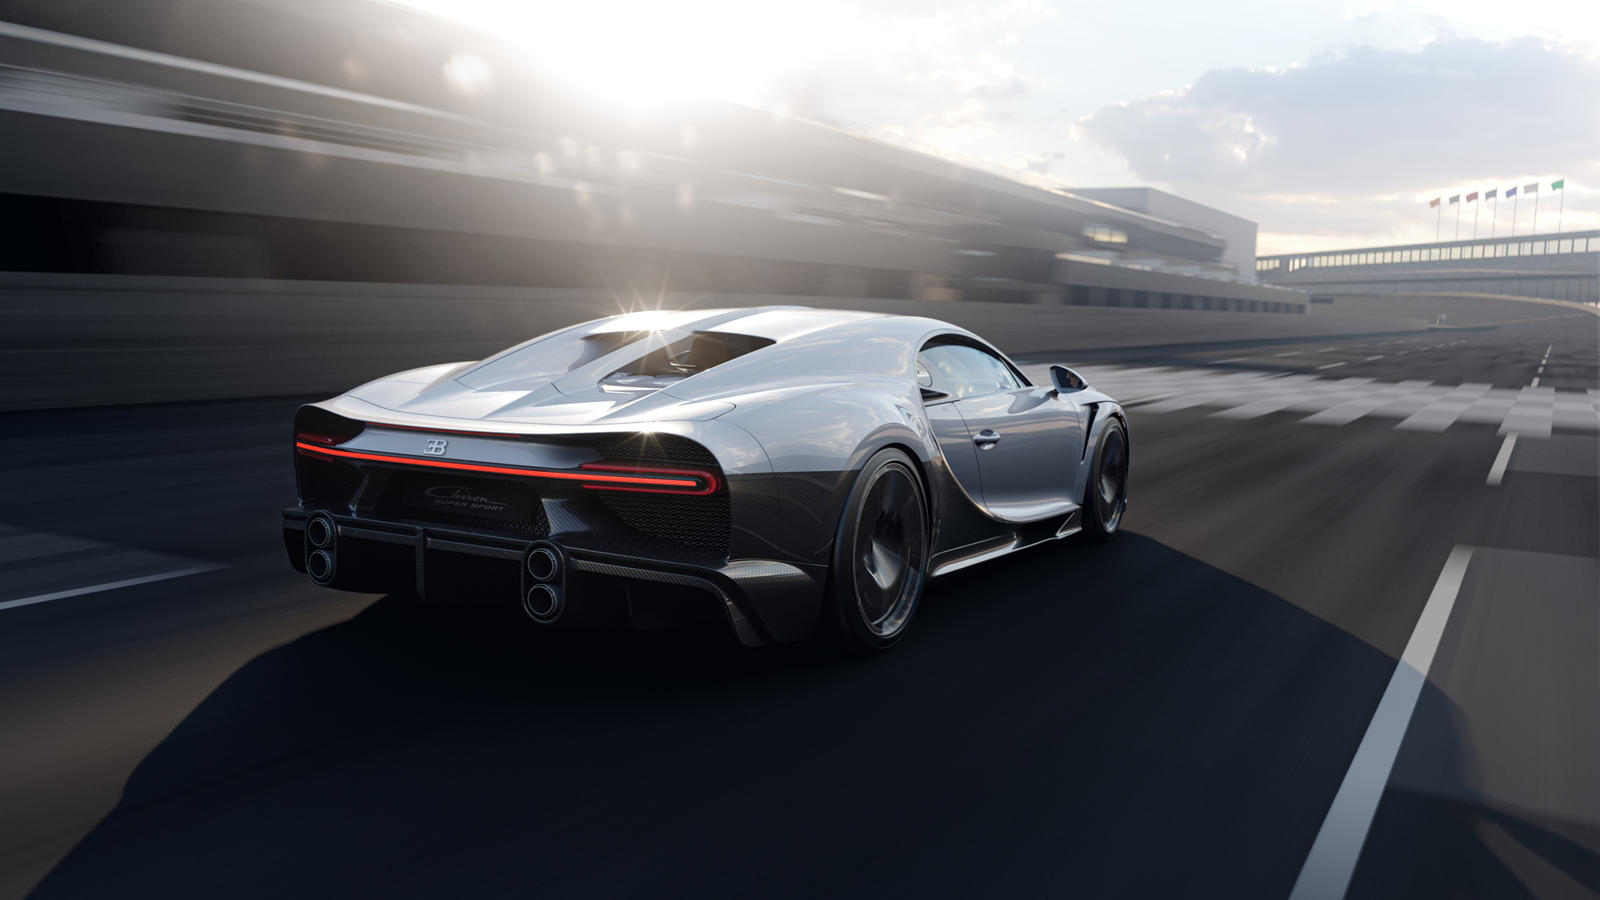 Не каждый день Bugatti представляет новую модель. Вчера французский автопроизводитель поделился теневым тизером нового гиперкара, который оказался специальной версией Chiron. Что ж, занавес полностью открылся, и теперь мы можем подтвердить анонс ново